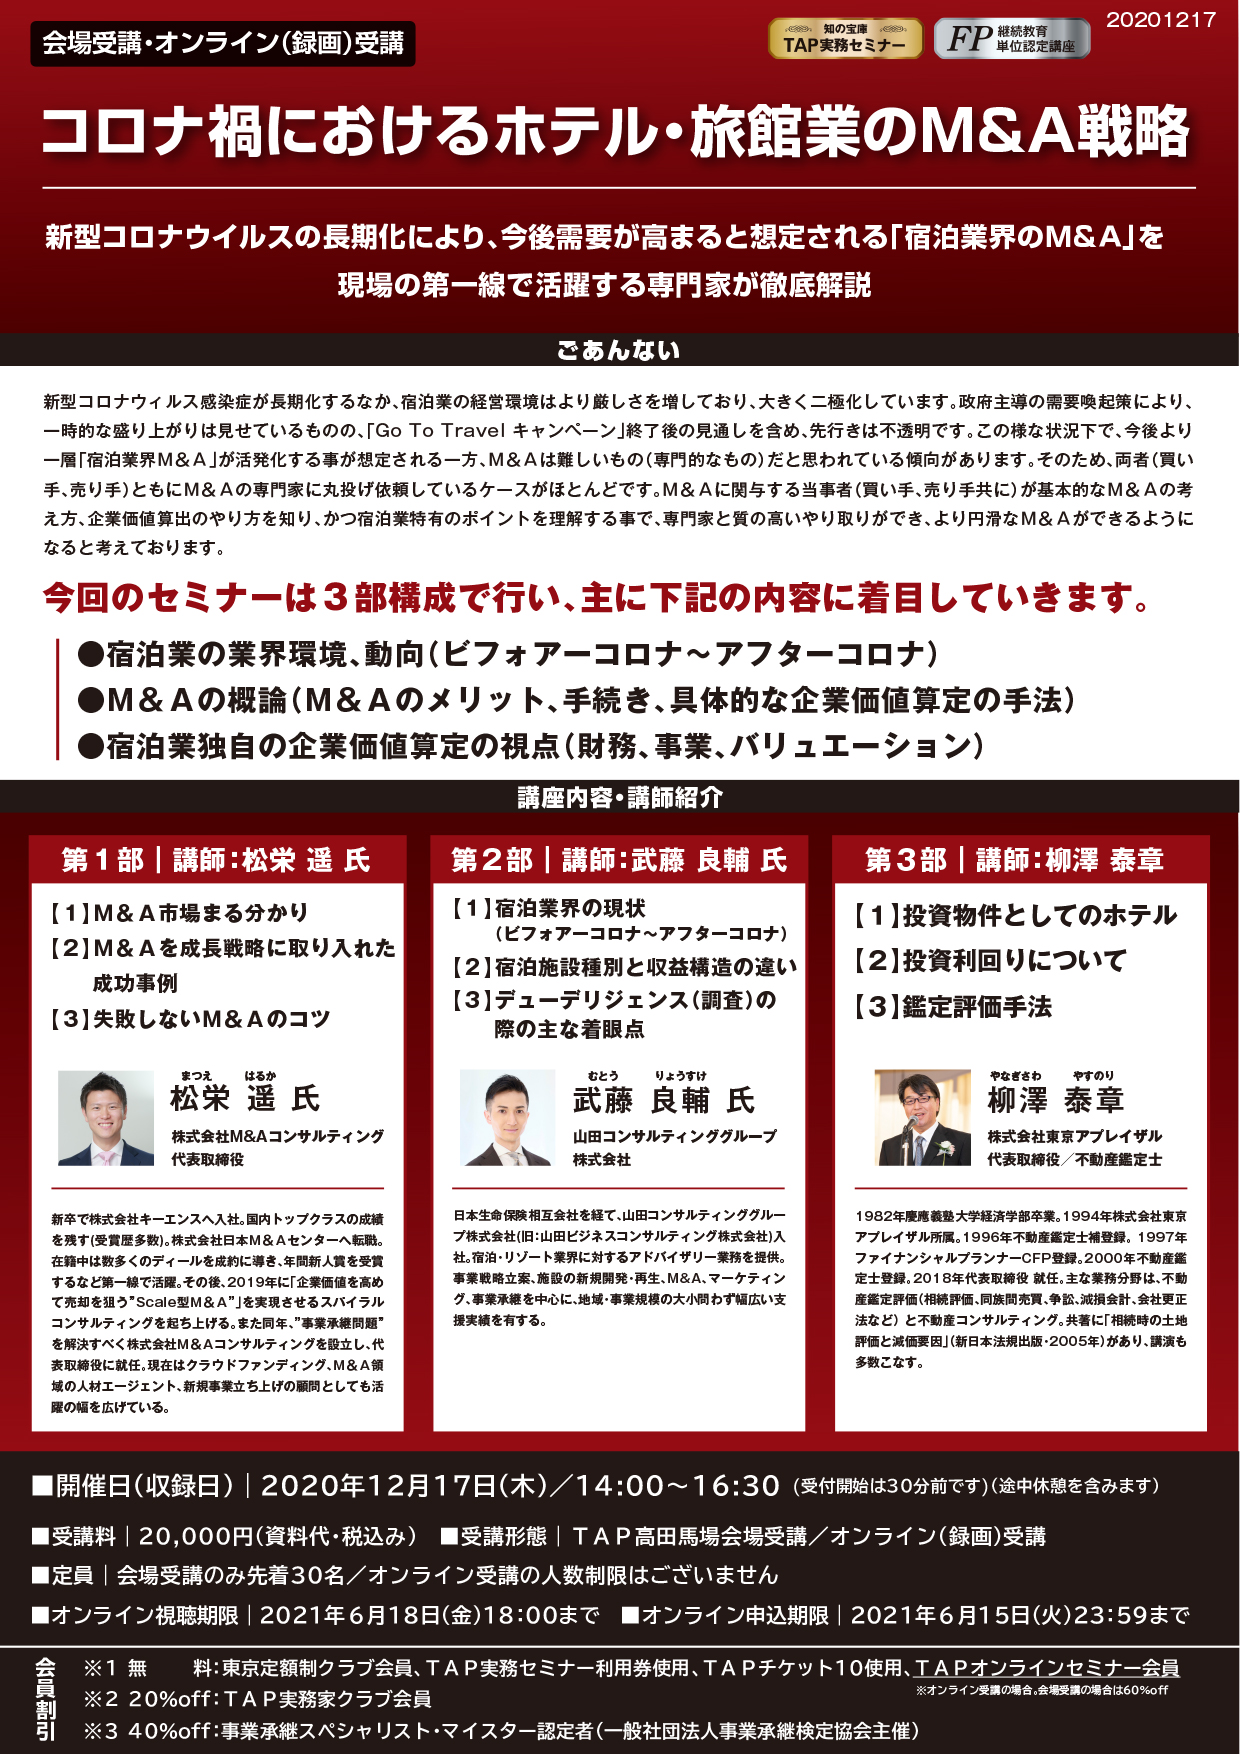 12/17(THU)『コロナ禍におけるホテル・旅館業のM&A戦略』